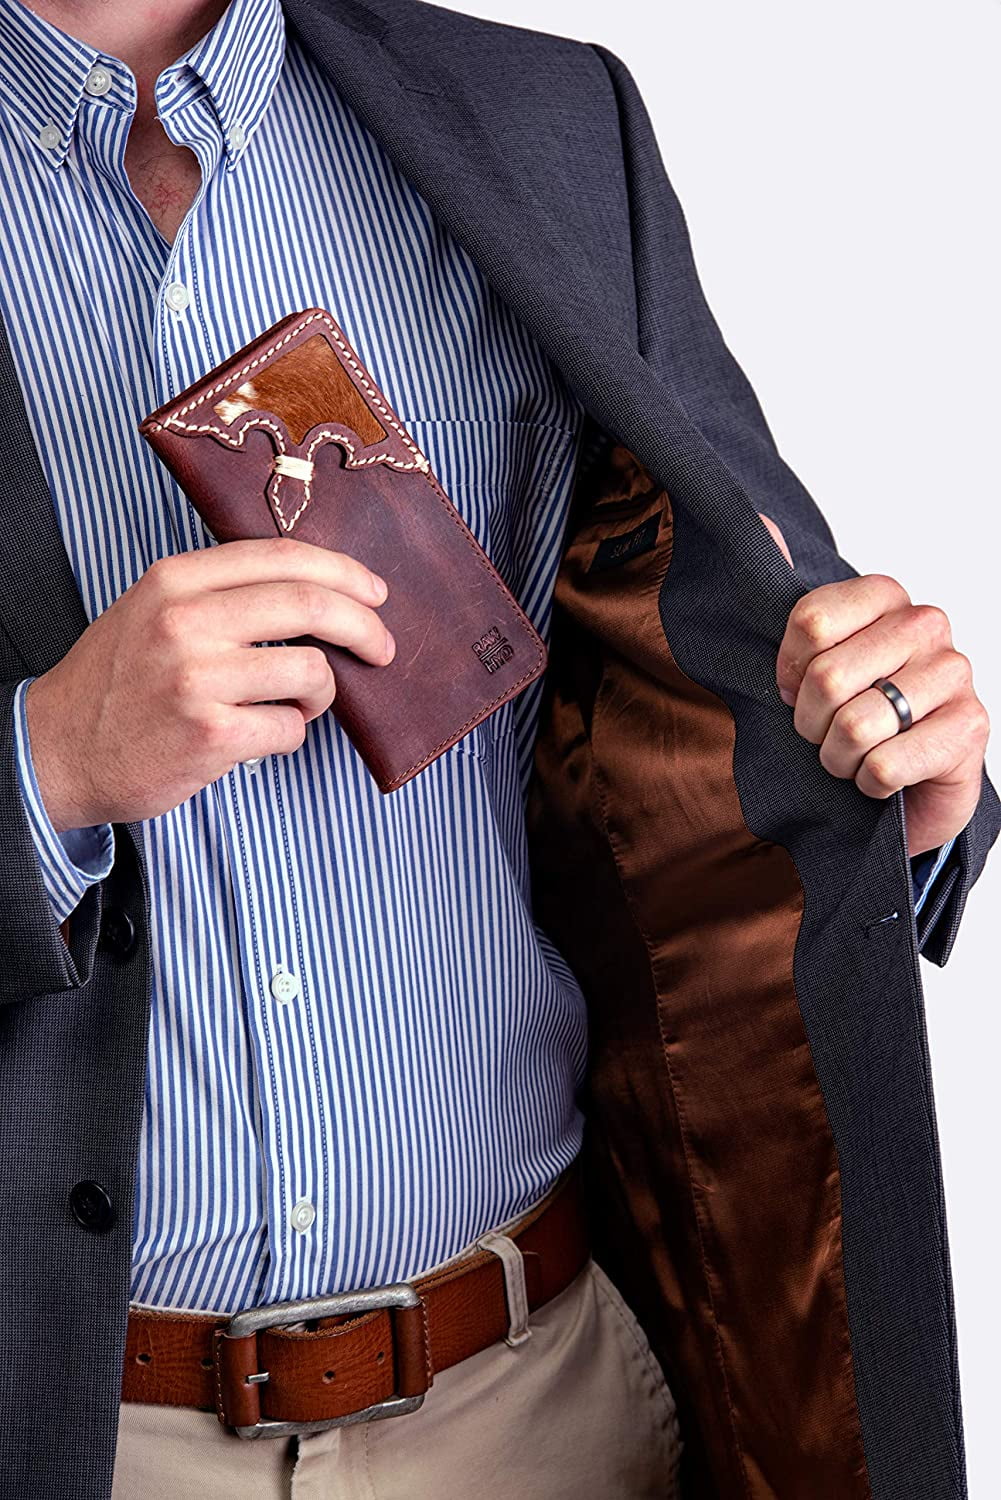 RAW HYD Full-Grain Leather Men’s Bifold Wallet – Leather Wallets for Men  Bifold w/ 6 Credit Card Slots – Leather Wallet for Men – Stylish Mens  Bifold